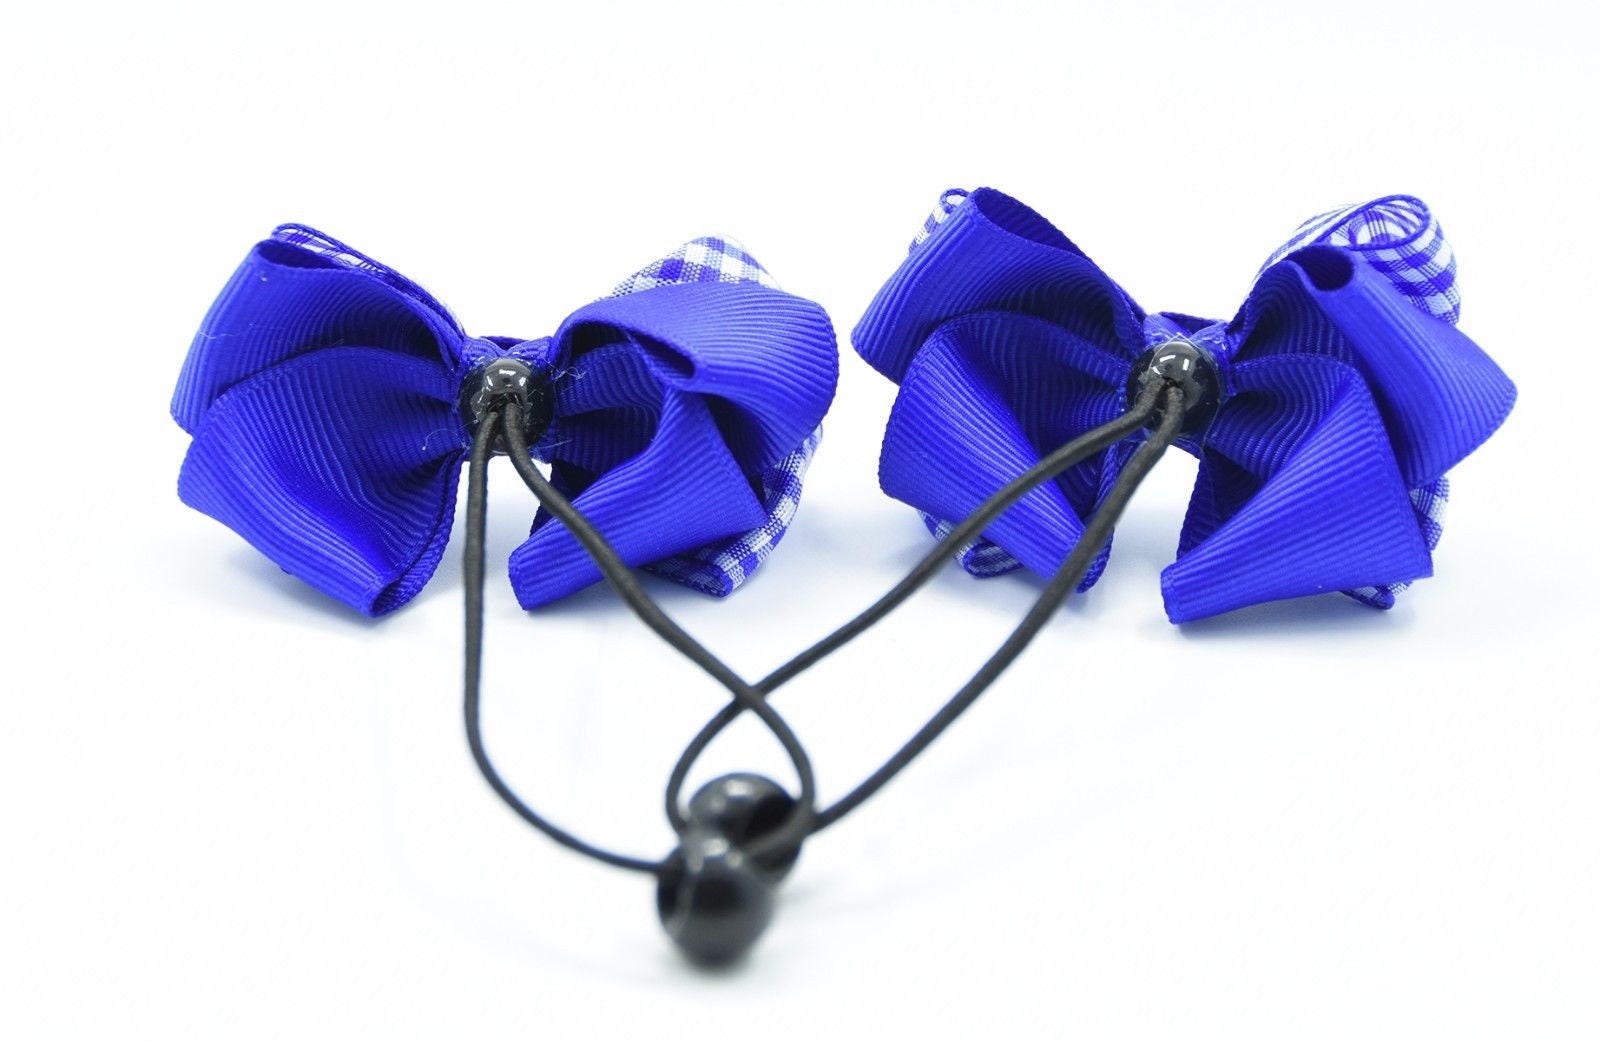 Royal Blue Velvet Ribbon Bow Hair Clip, Classic Royal Blue Velvet